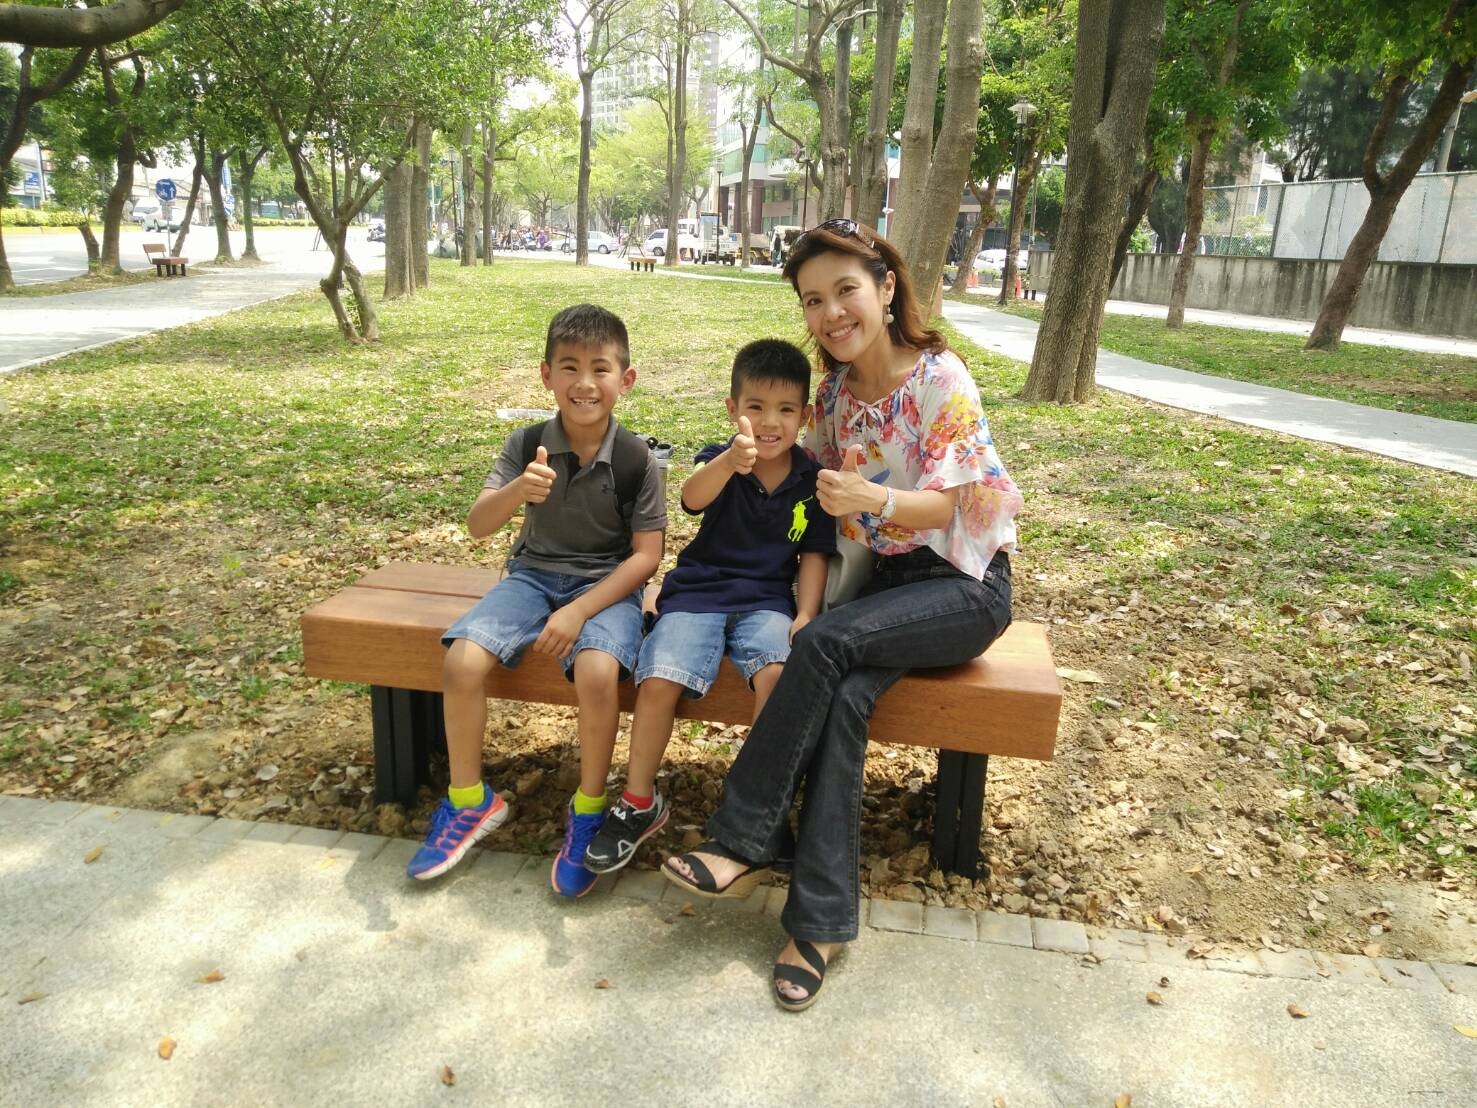 兼具耐用與美觀 新竹綠園道新設座椅